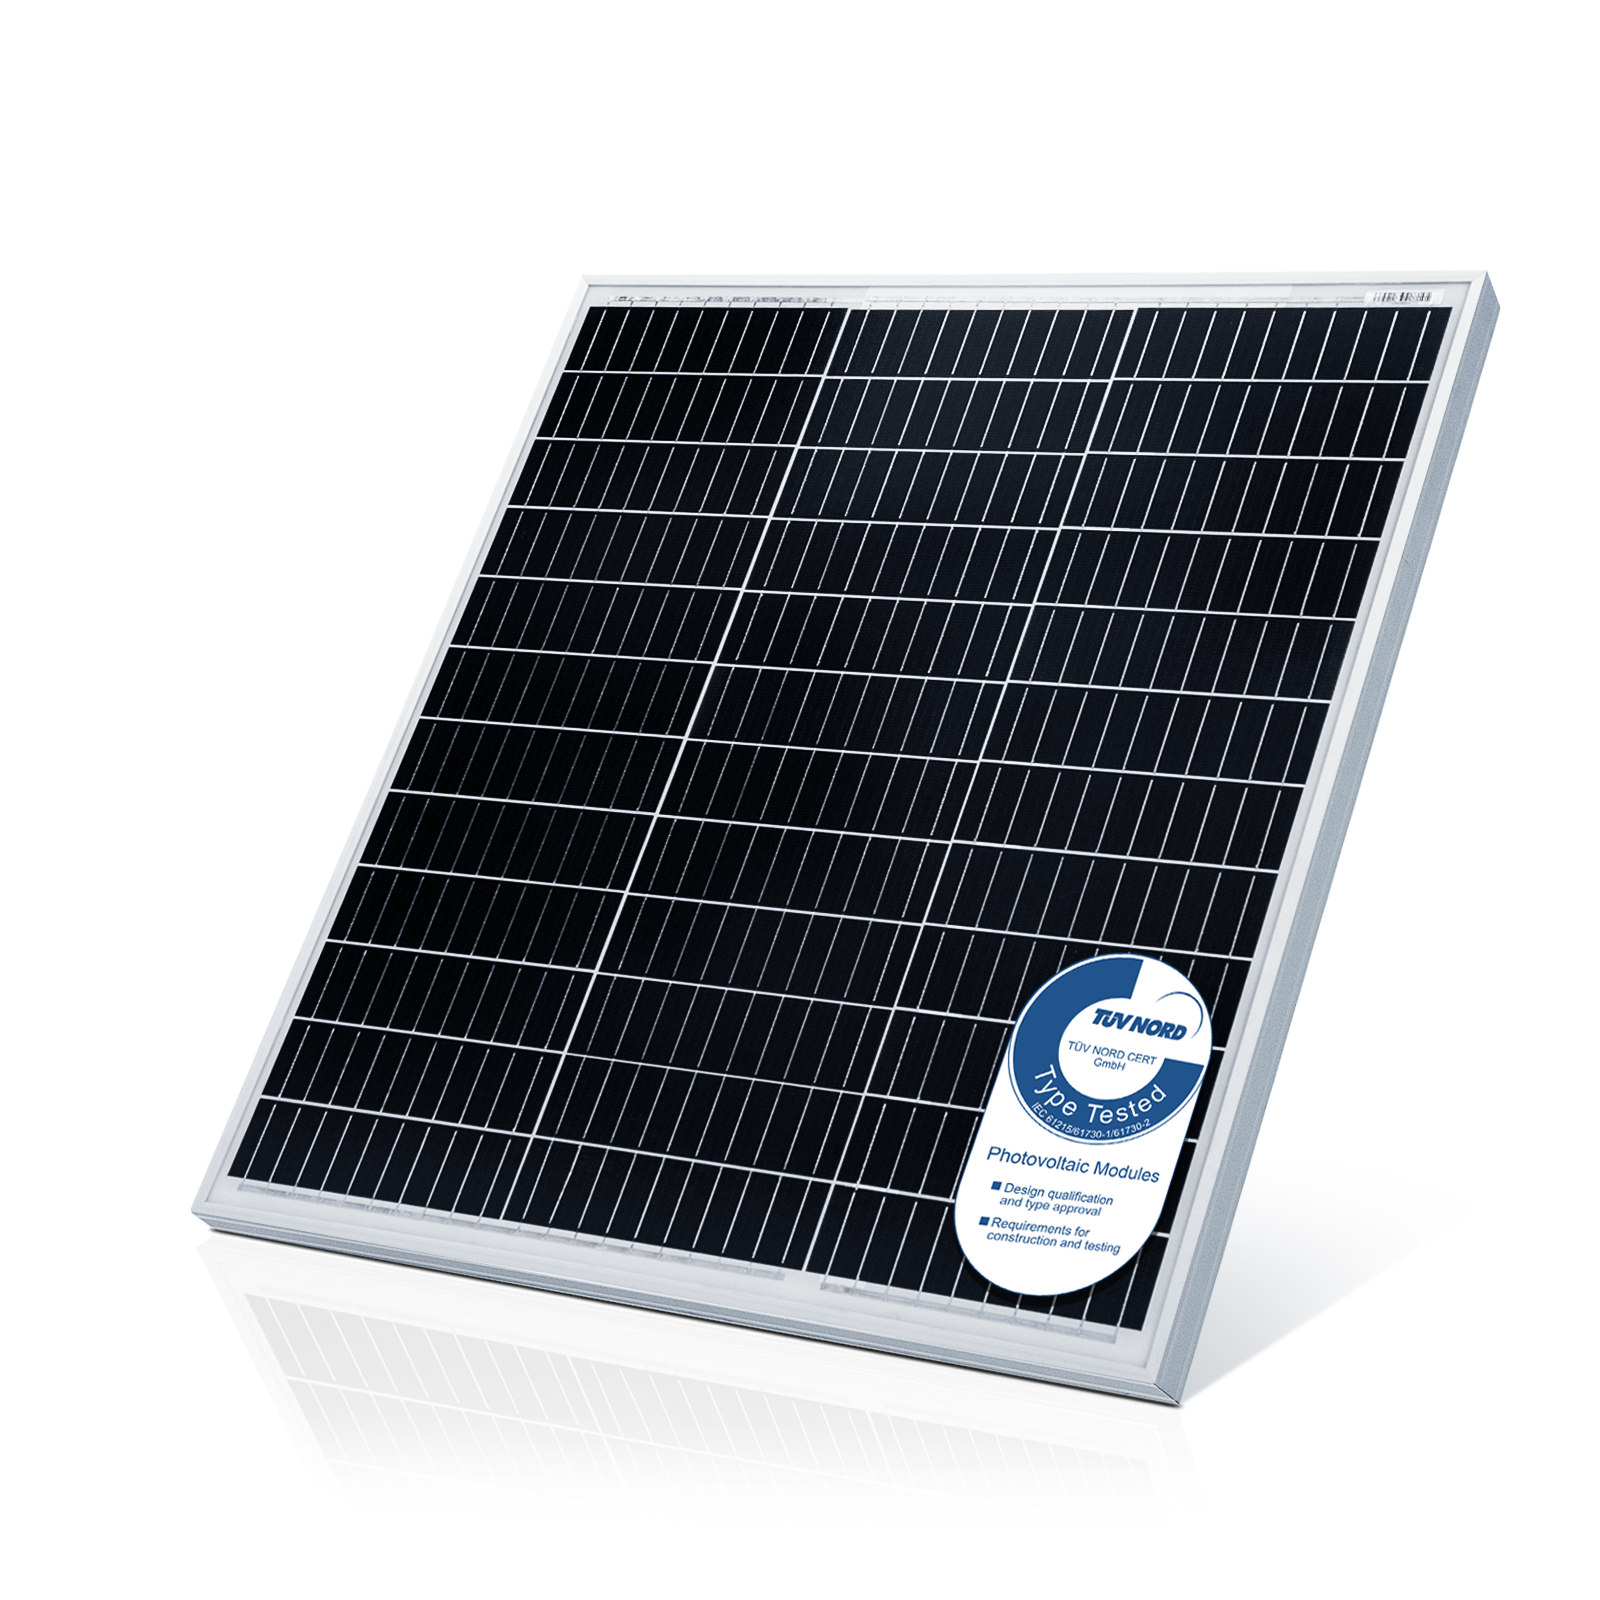 Billede af Solpanel monokrystallinsk - 100 W, 18 V til 12 V batterier, solcelle, ladekabel, silicium